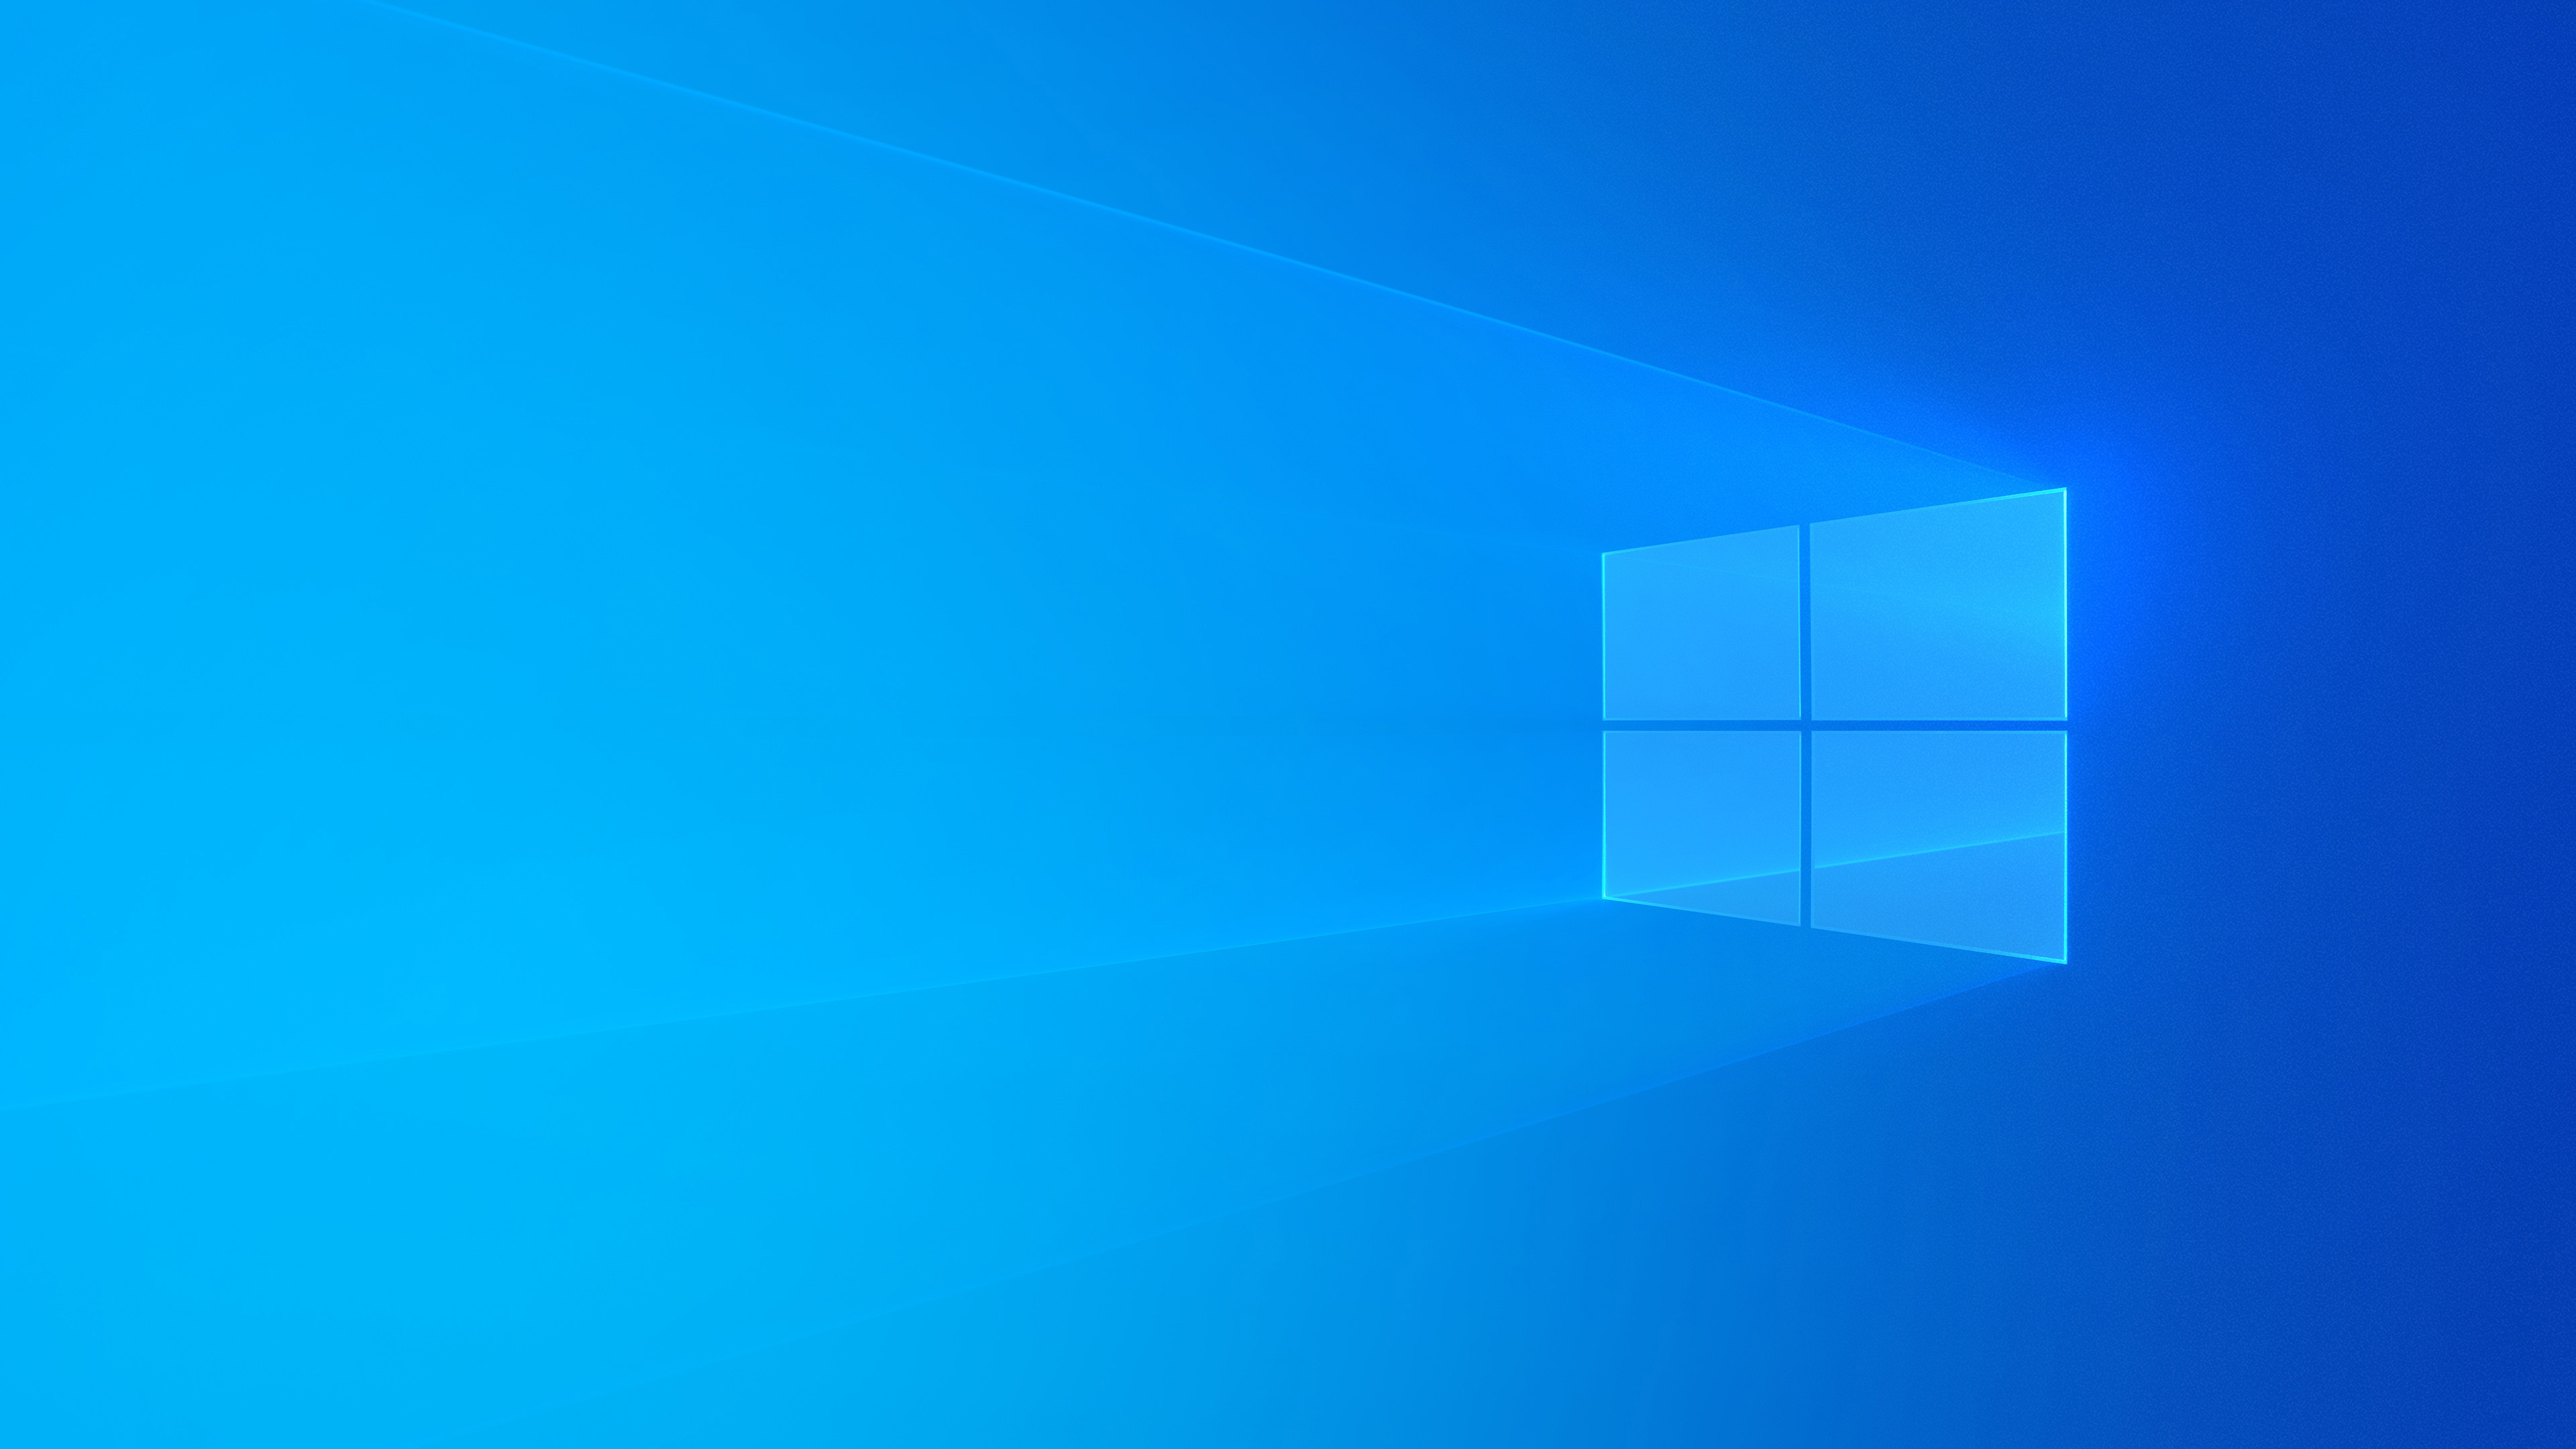 Tận hưởng trải nghiệm mới toanh với hình nền phiên bản 1903 của desktop Windows 10! Sự cập nhật mới nhất này sẽ mang đến cho bạn những hình nền độc đáo, tinh tế và đẹp mắt hơn bao giờ hết. Hãy nhanh chóng cập nhật và cùng trải nghiệm nhé!